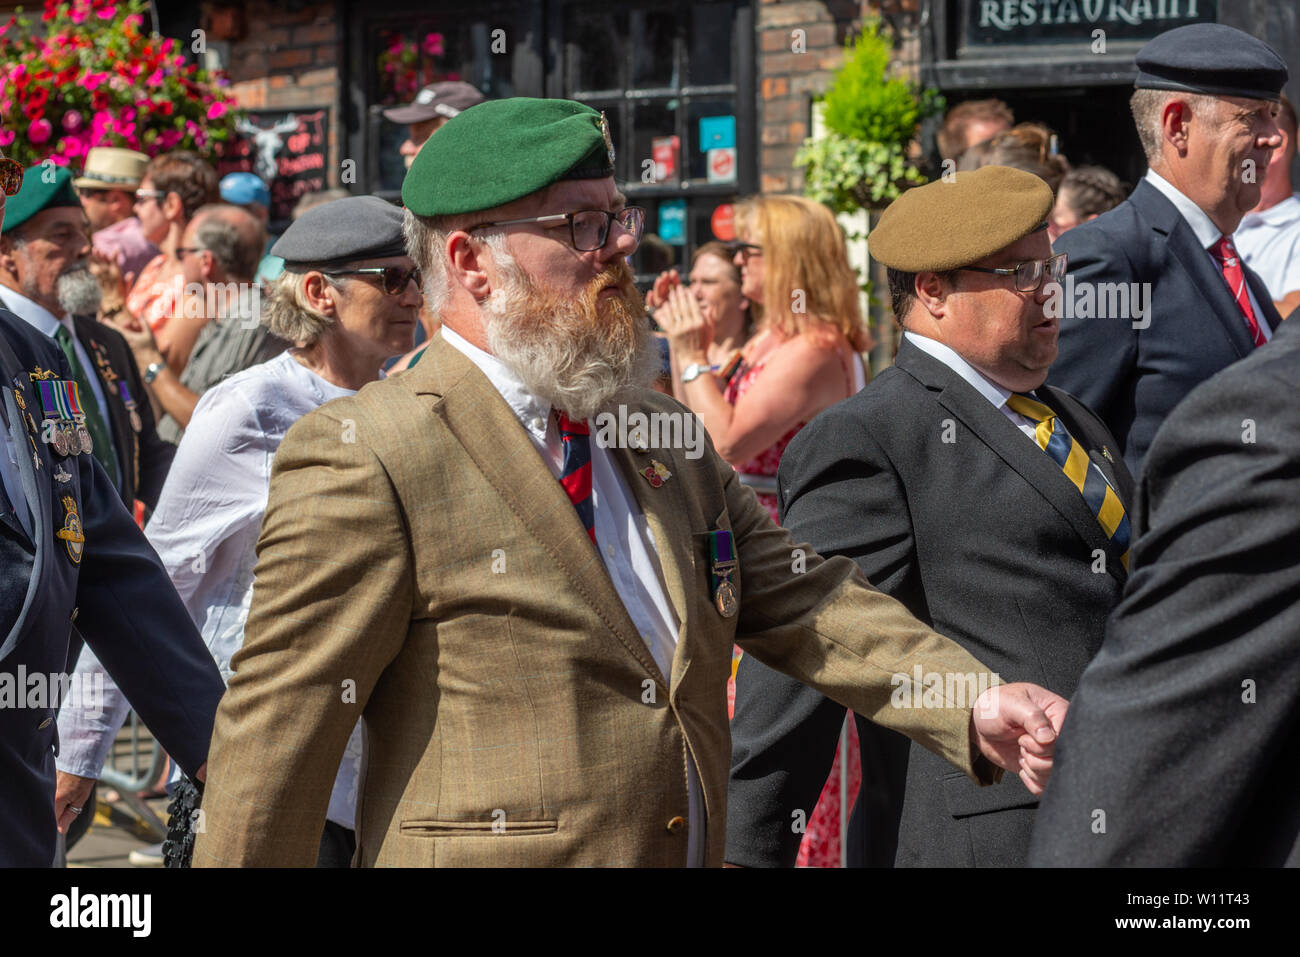 Día de las Fuerzas Armadas, Salisbury, Wiltshire, Reino Unido. 29th de junio de 2019. Veteranos de las fuerzas armadas marchan frente a grandes multitudes en un desfile mientras serpentea alrededor del centro de la ciudad bajo el sol caliente. Foto de stock